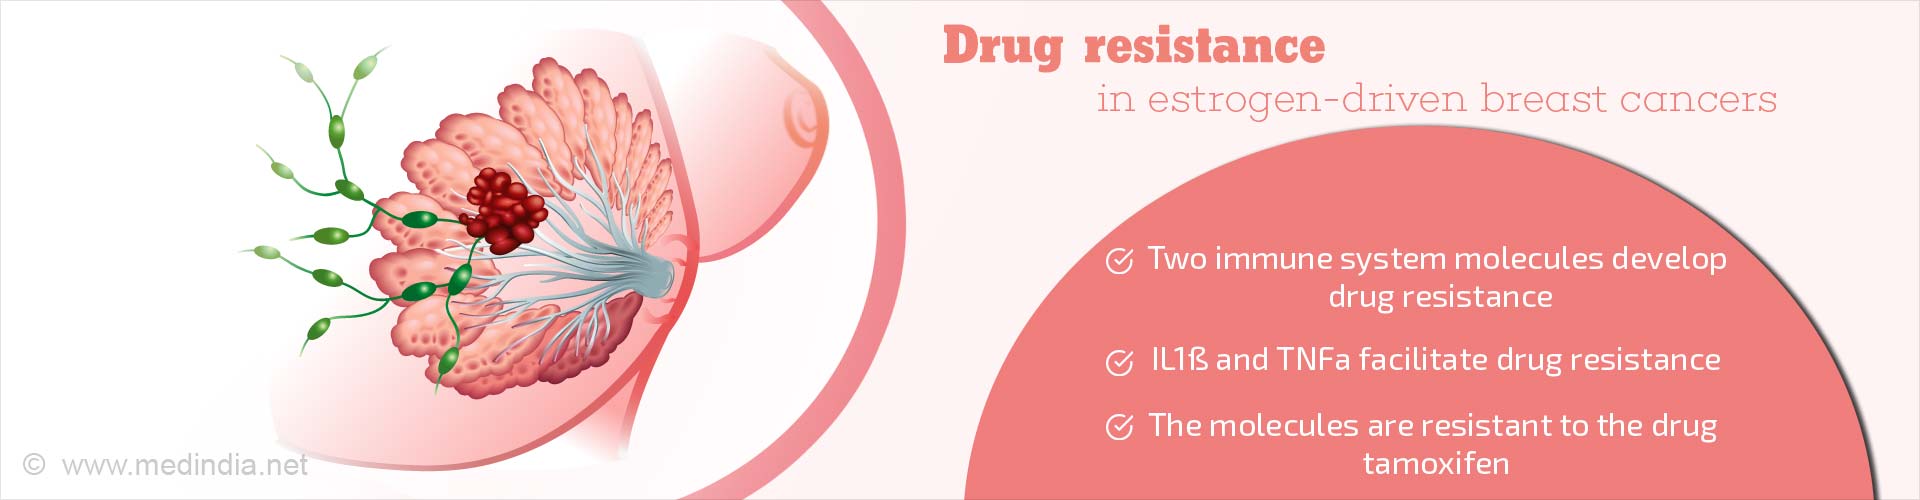 drug resistance in estrogen-driven breast cancers
- two immune system molecules develop drug resistance
- IL1B and TNFa facilitate drug resistance
- the molecules are resistant to the drug tamoxifen